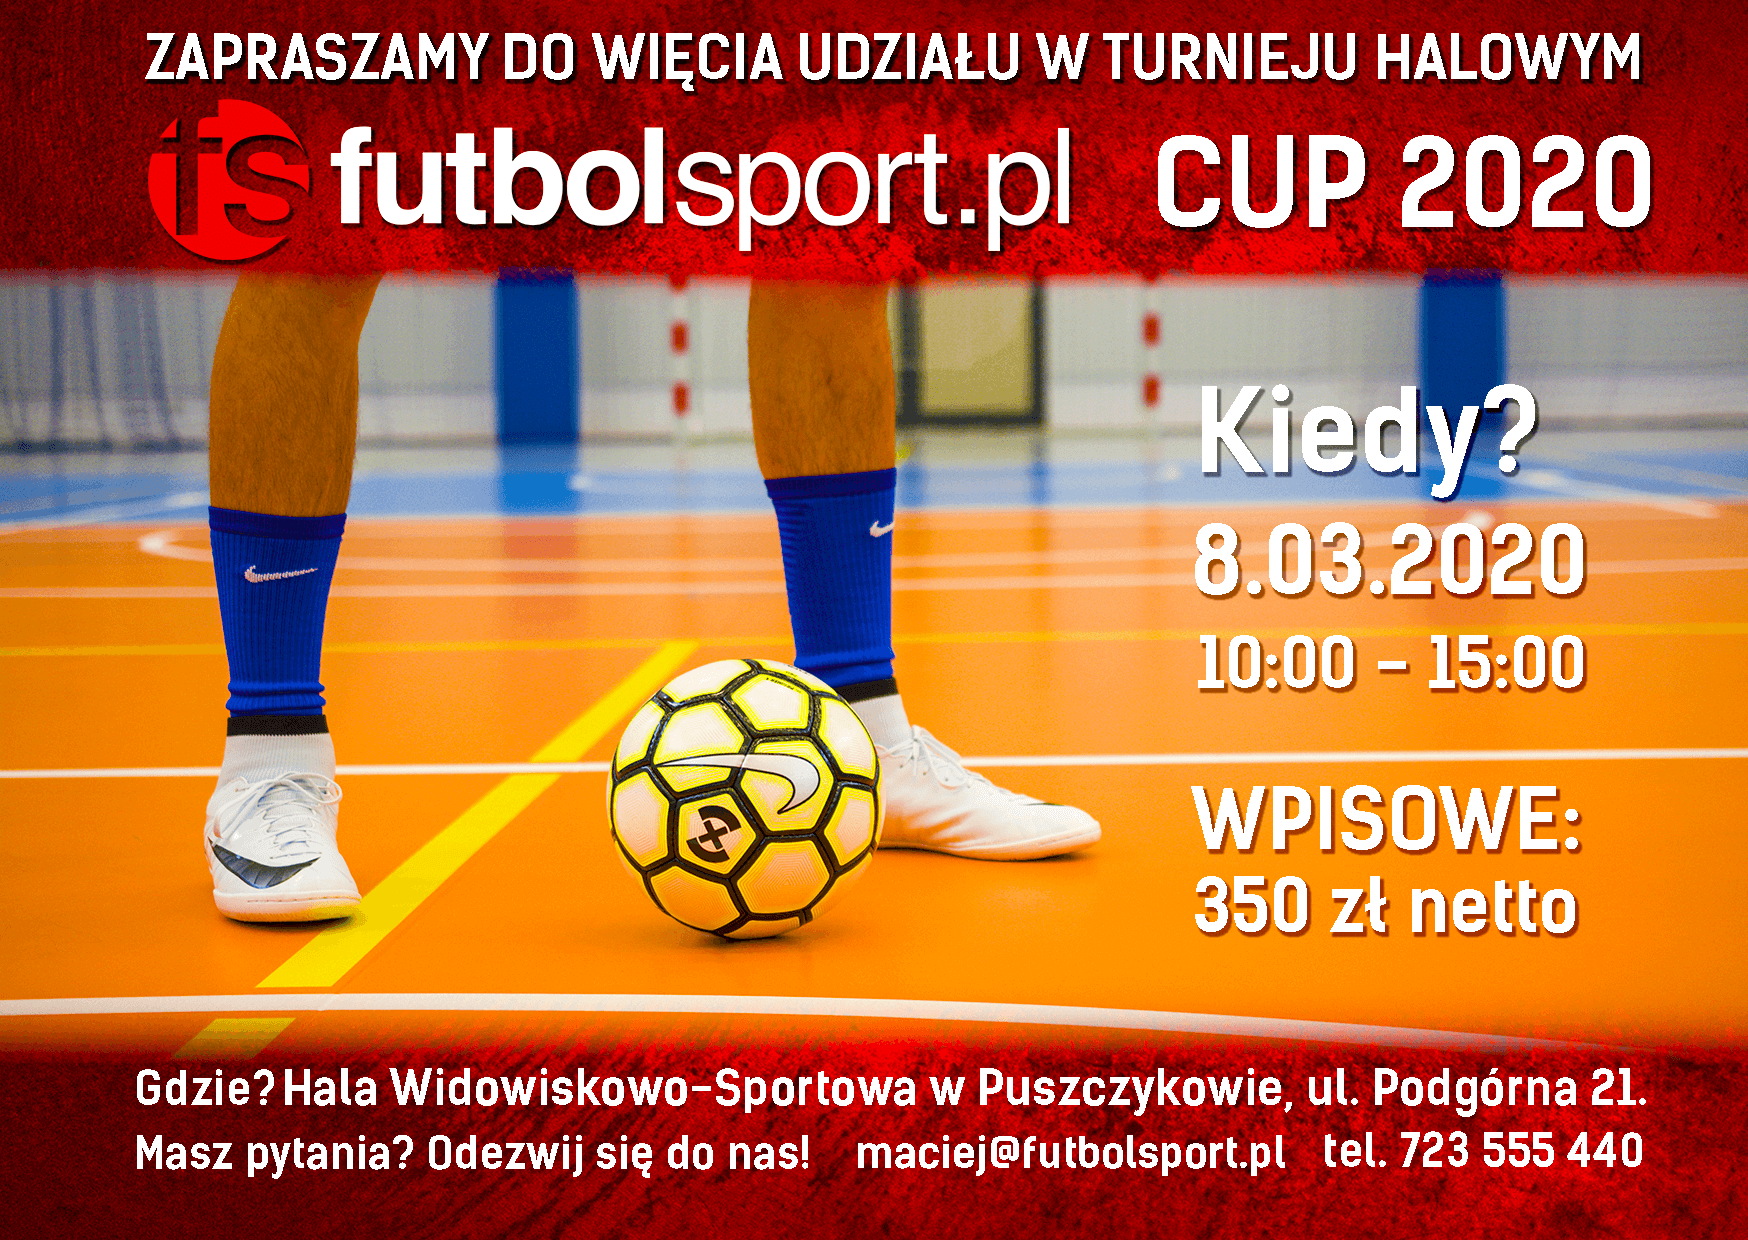 Ruszają zapisy do Turnieju futbolsport.pl Cup 2020